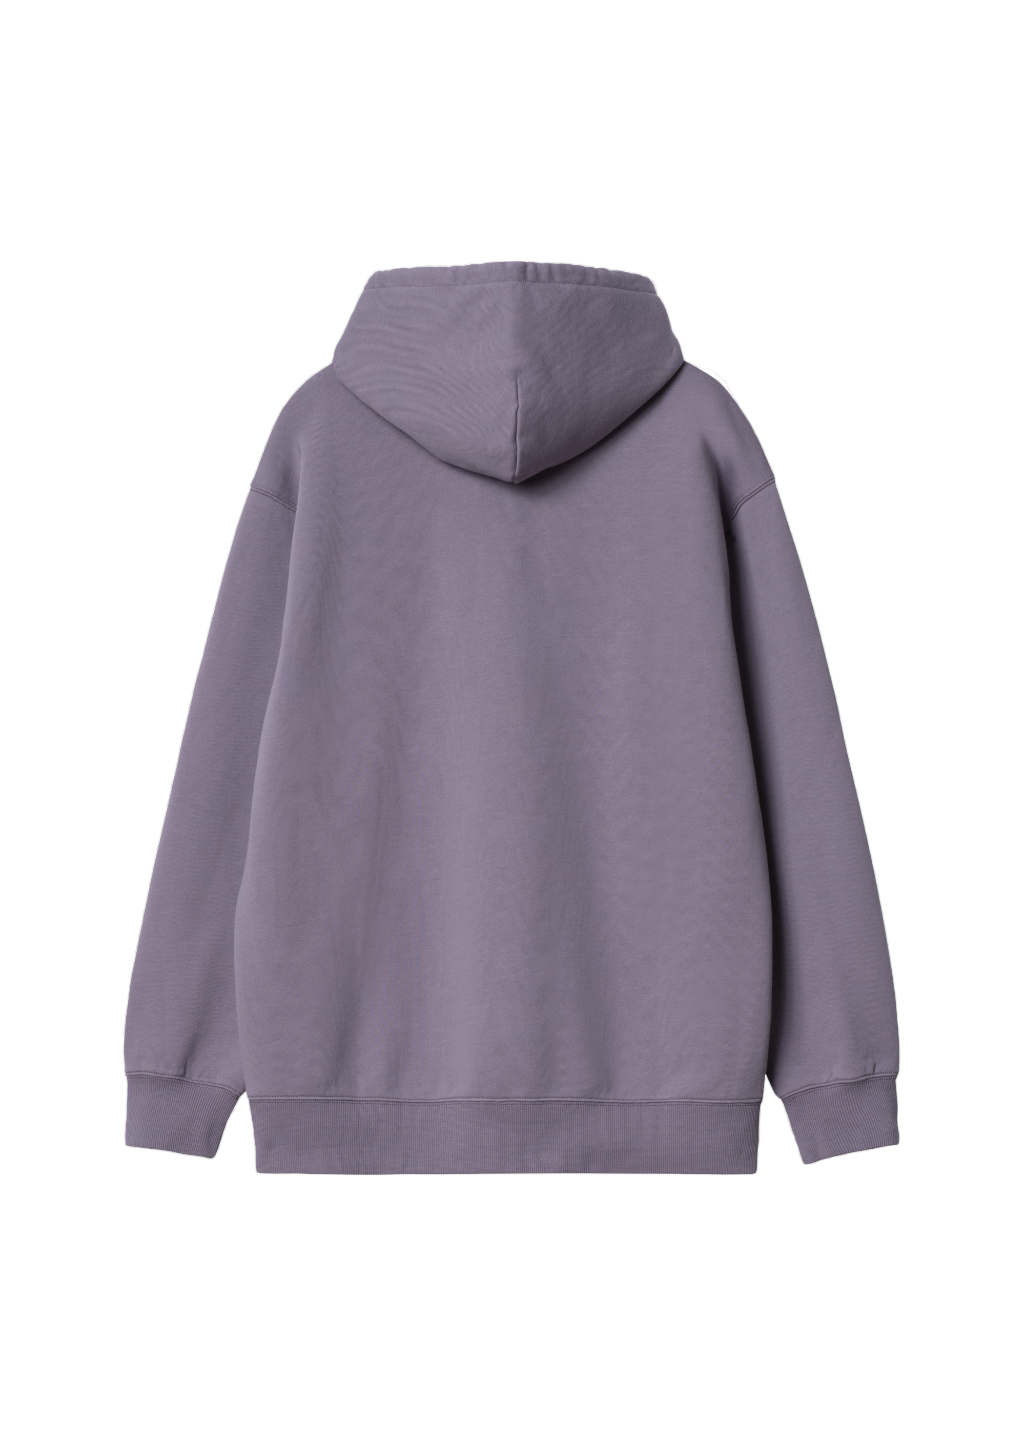 Carhartt WIP - W' Hooded Carhartt Sweatshirt - Glassy Purple